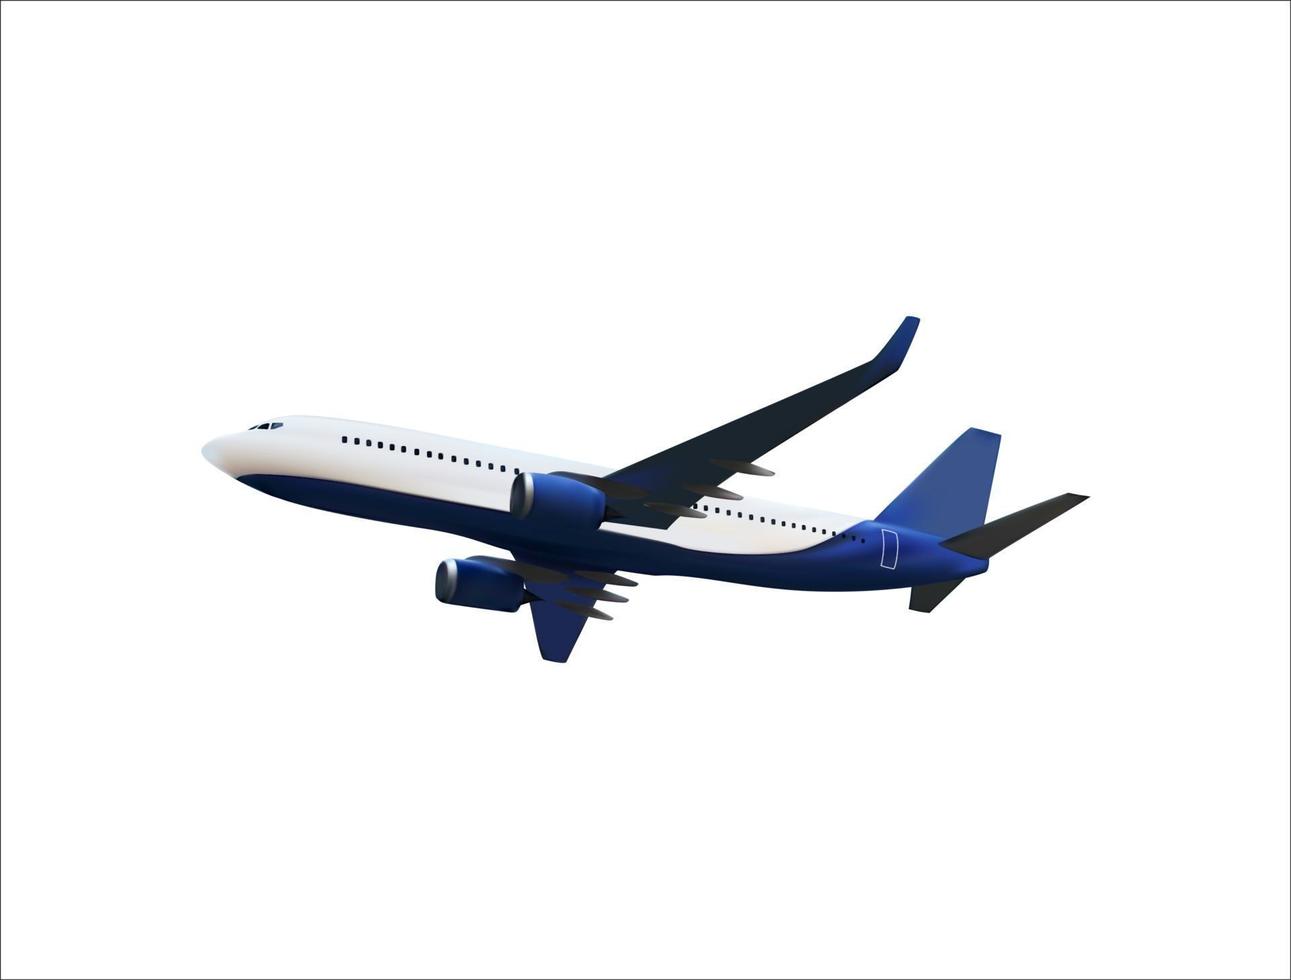 modello 3d realistico di un aeroplano che vola nell'aria di colorazione bianca e blu. illustrazione vettoriale